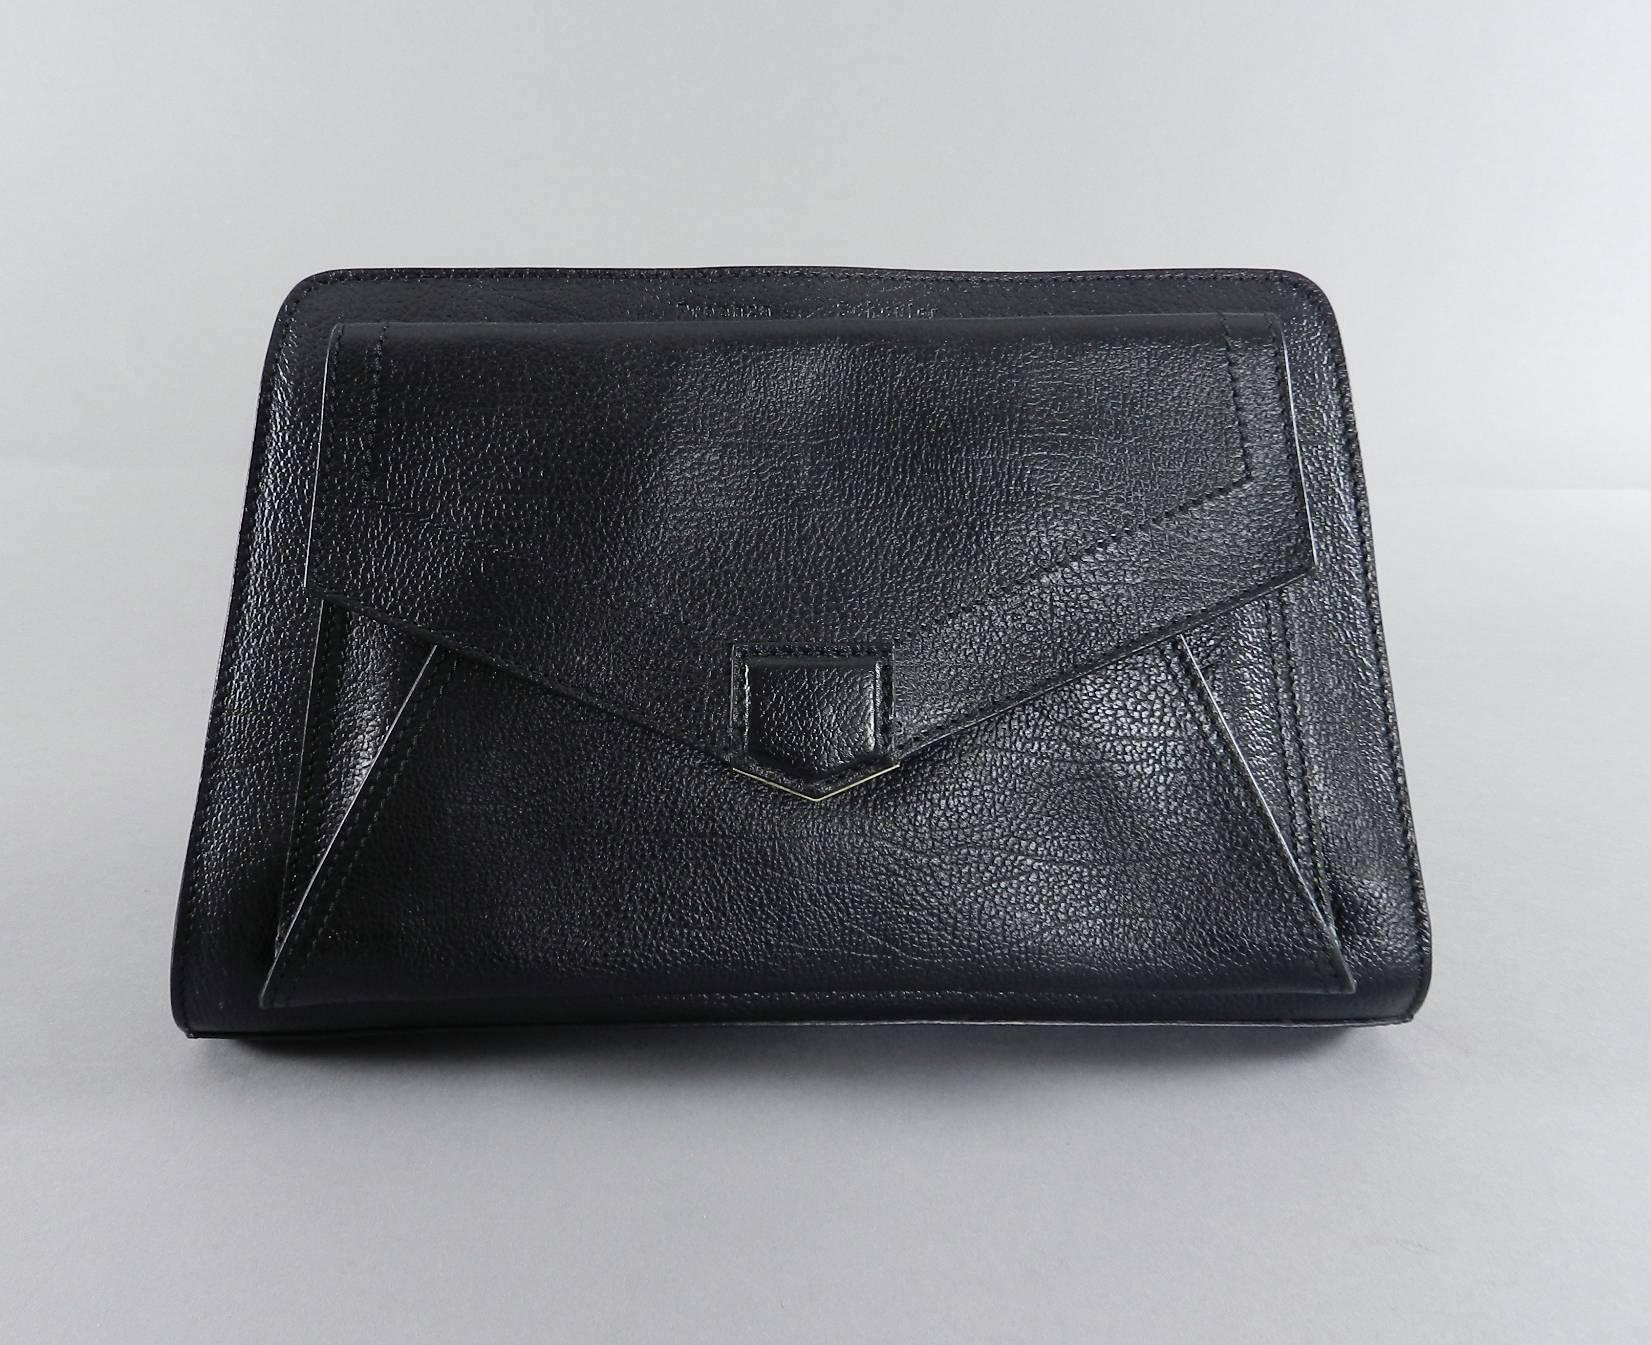 Proenza Schouler Black Clutch Bag with Silver Zipper 3